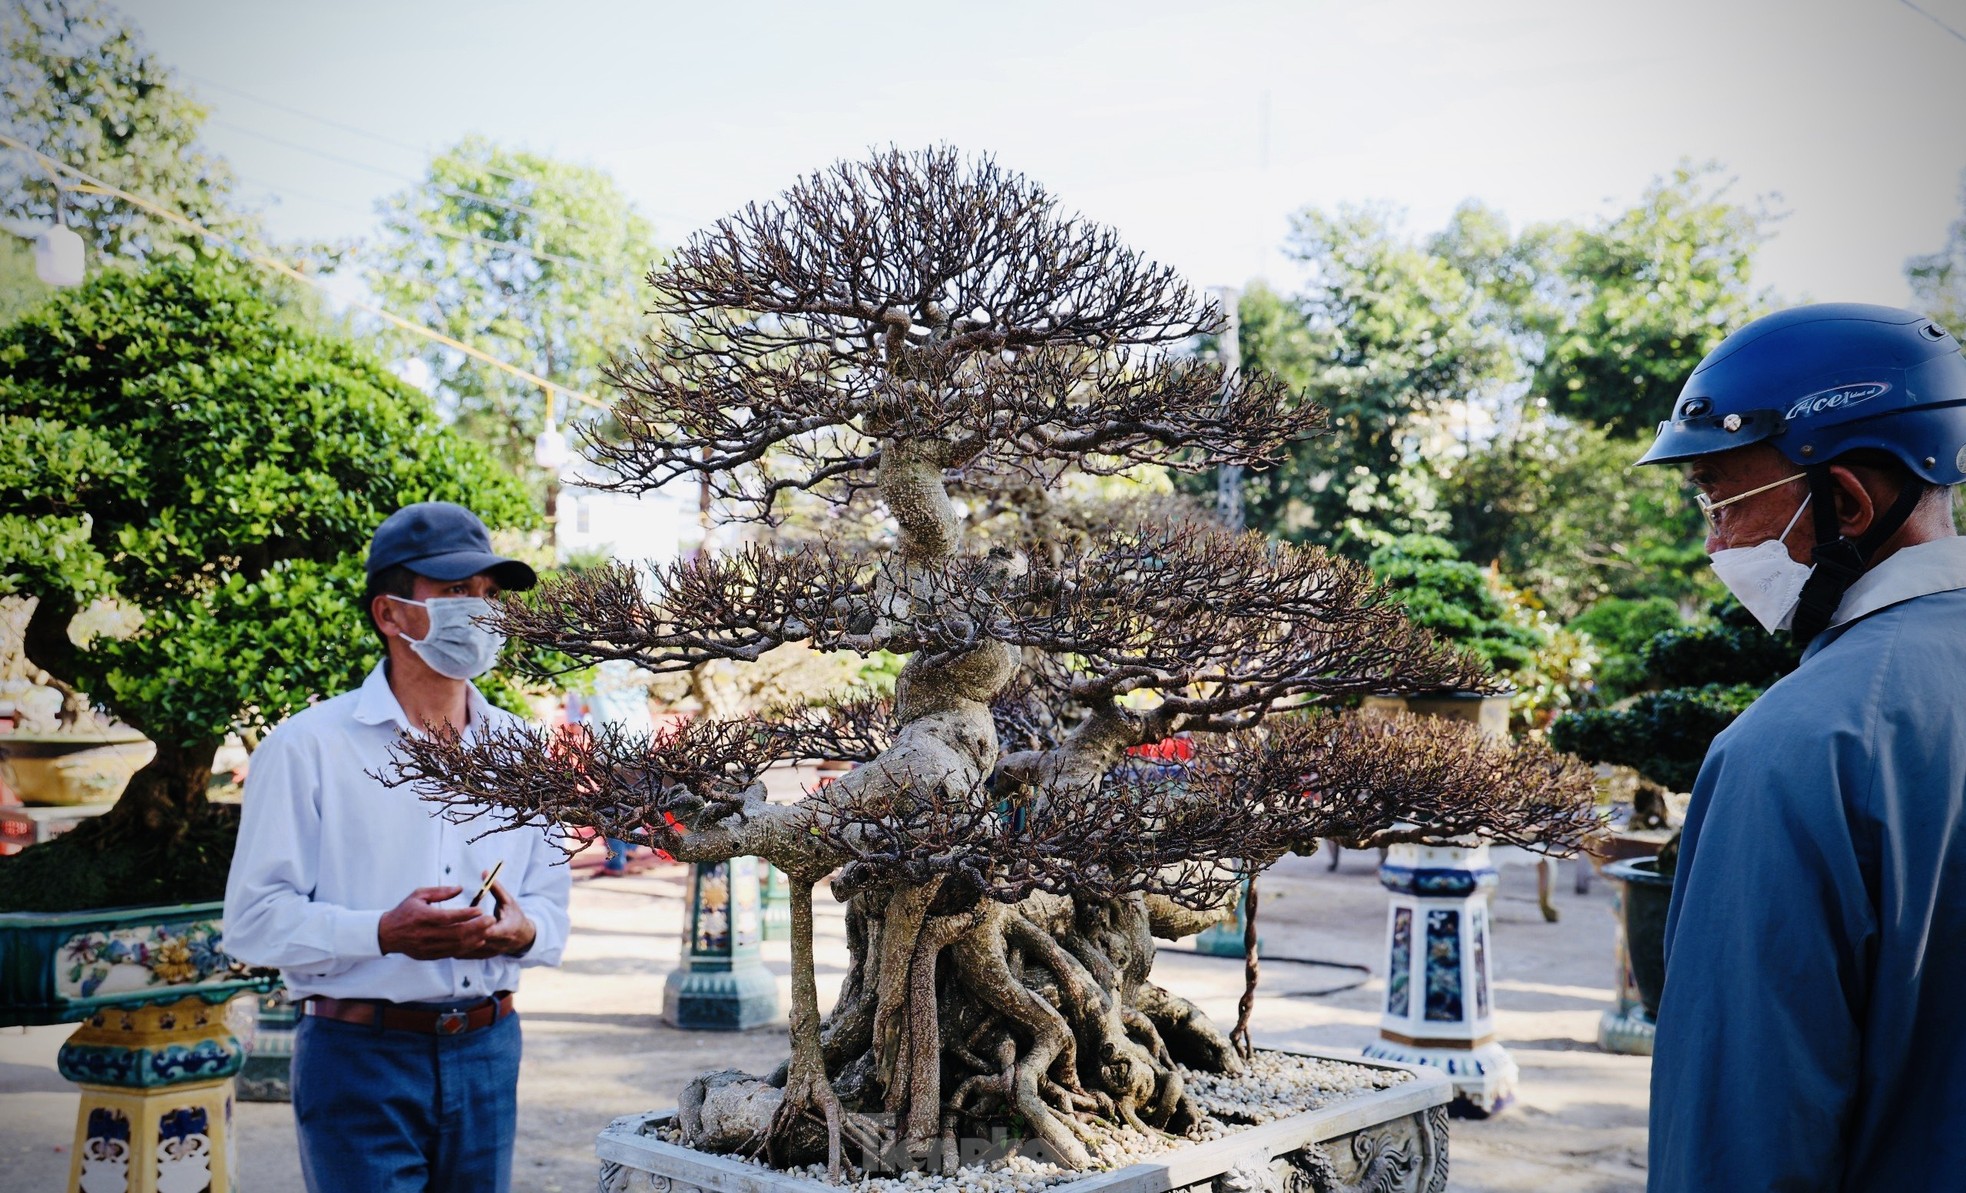 Dàn bonsai độc lạ, giá lên đến 500 triệu đồng ở Quảng Ngãi - Ảnh 5.